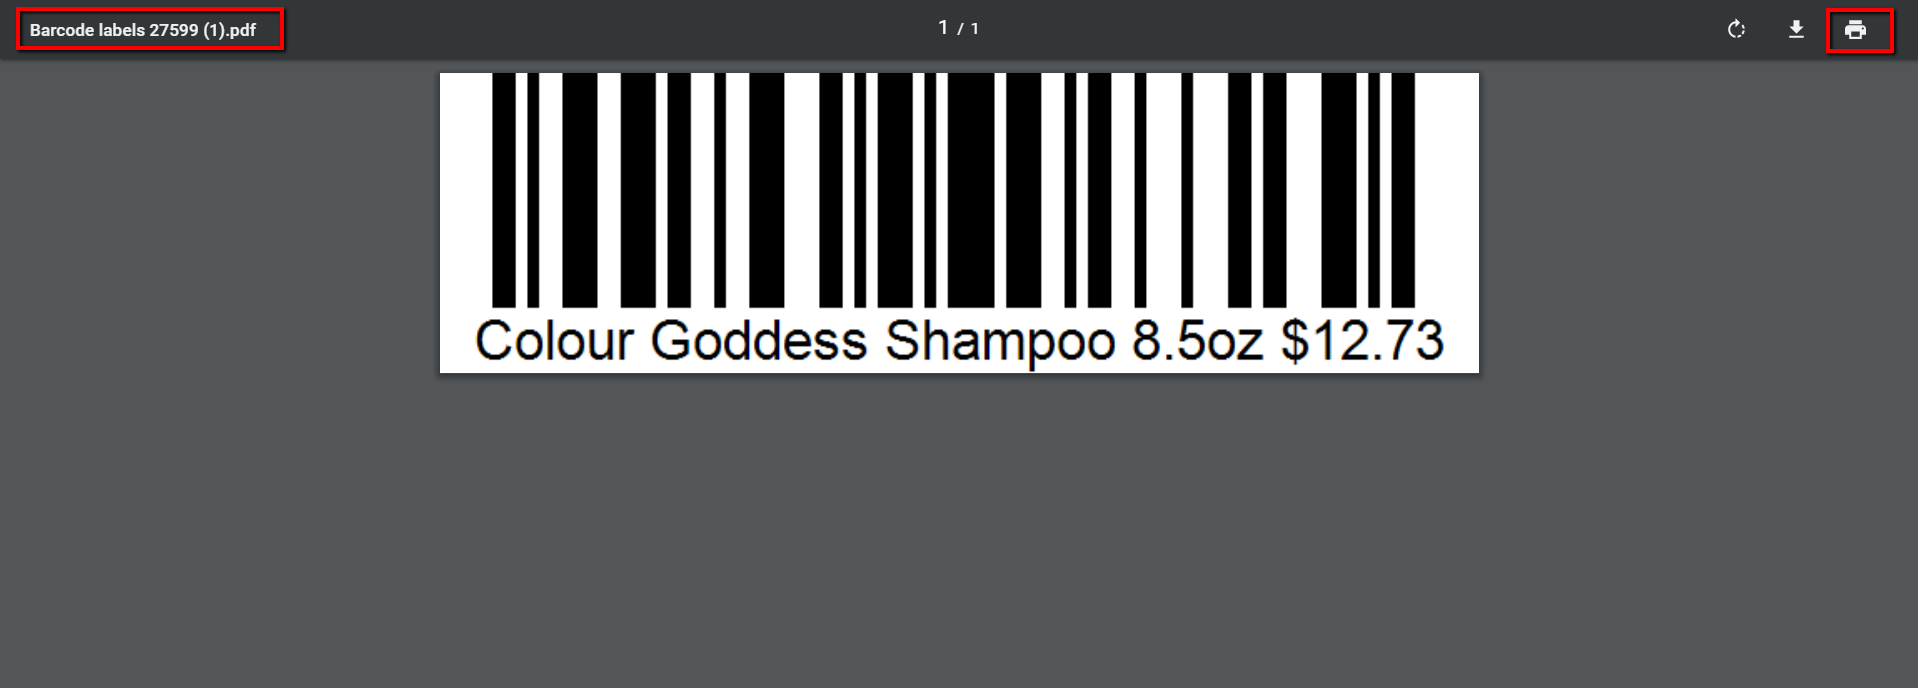 Print_Barcode-4.png